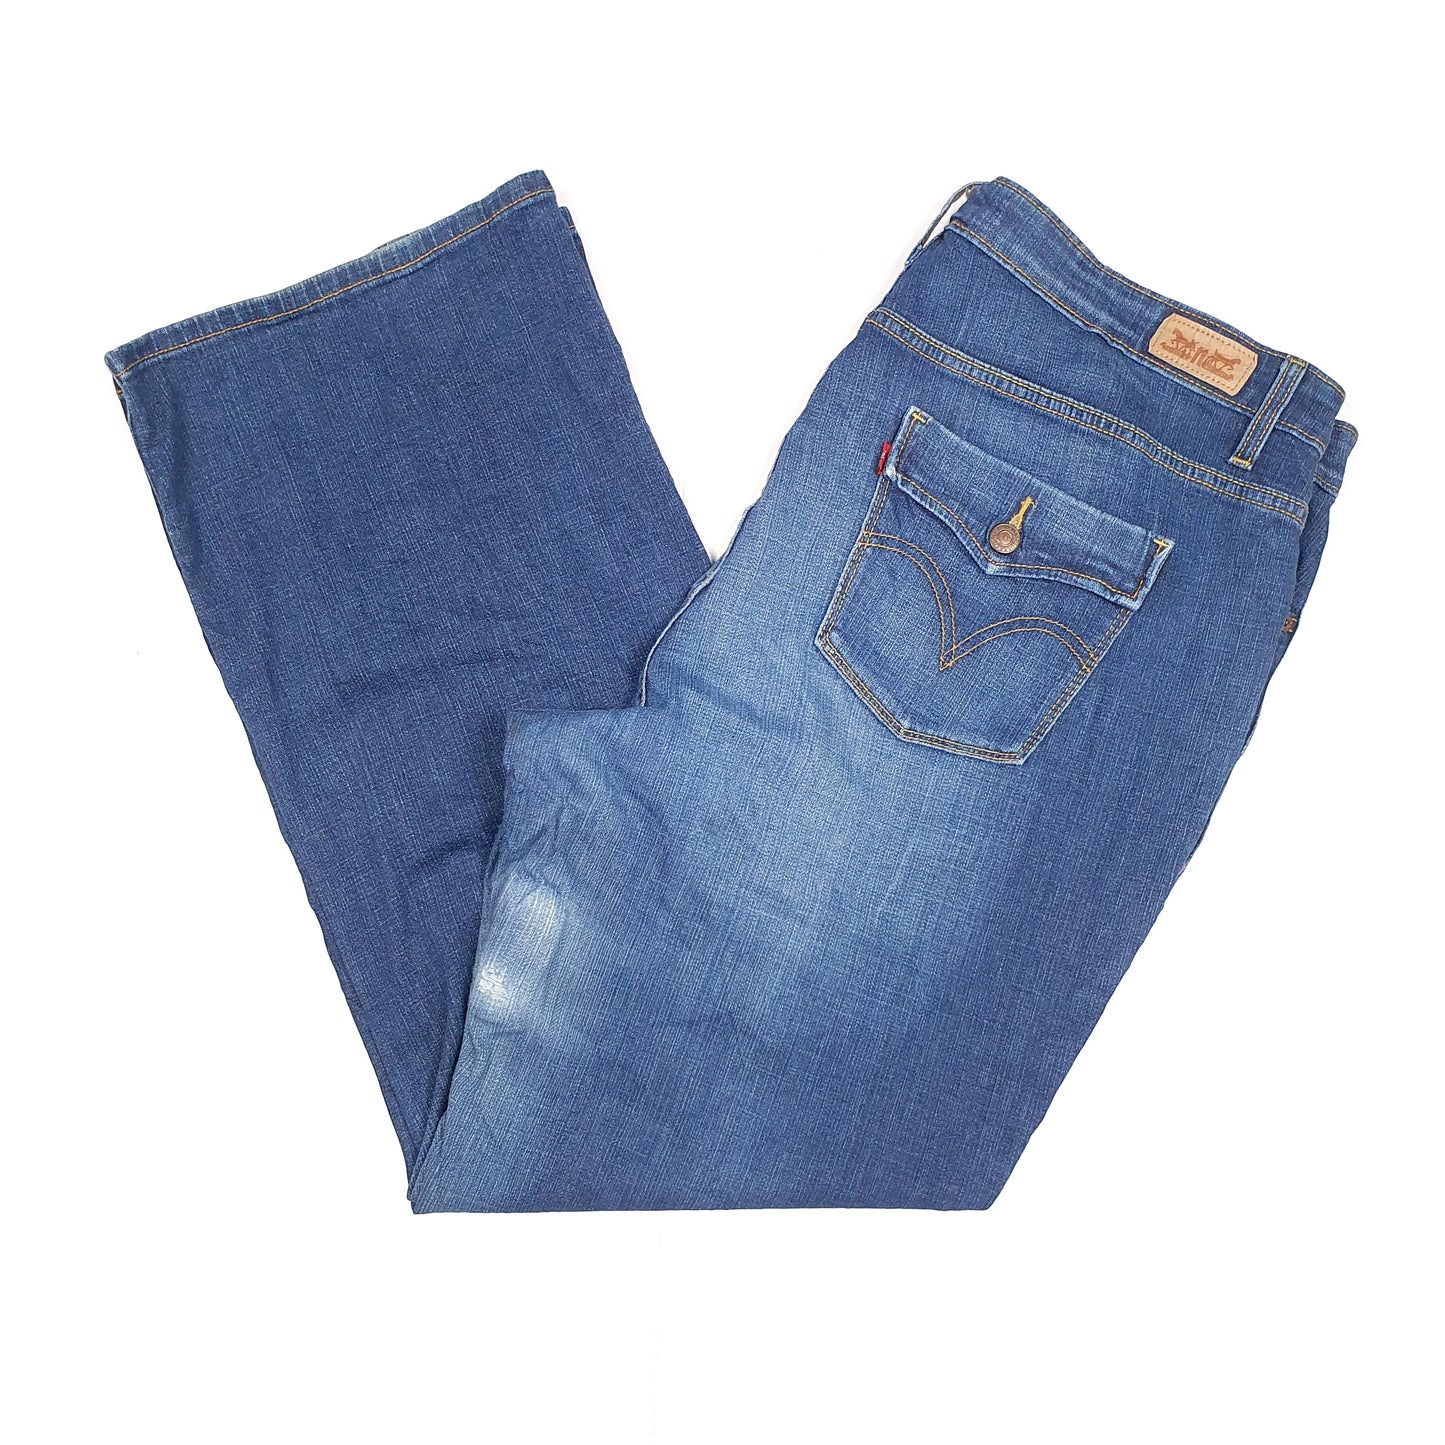 Blue Levis 580 Jeans